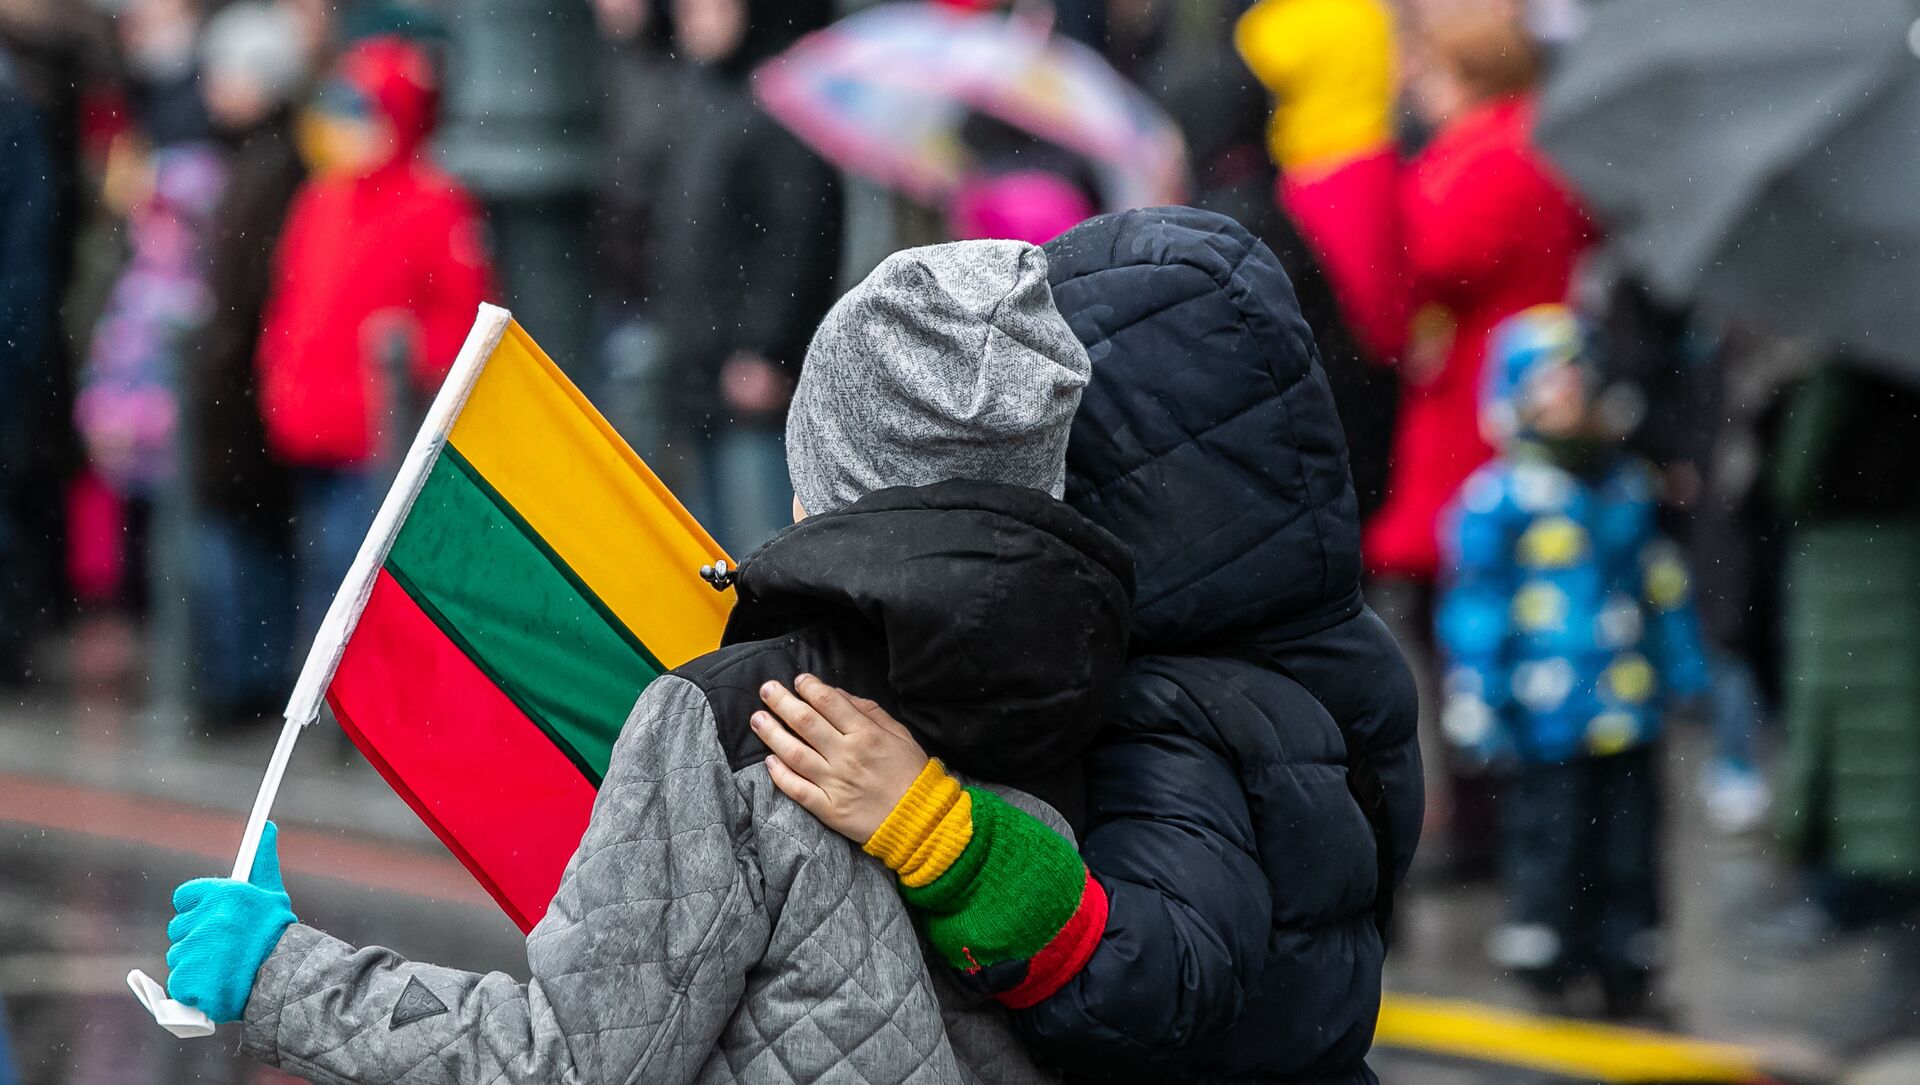 Празднование Дня восстановления независимости Литвы, 11 марта 2020 года - Sputnik Lietuva, 1920, 10.02.2021